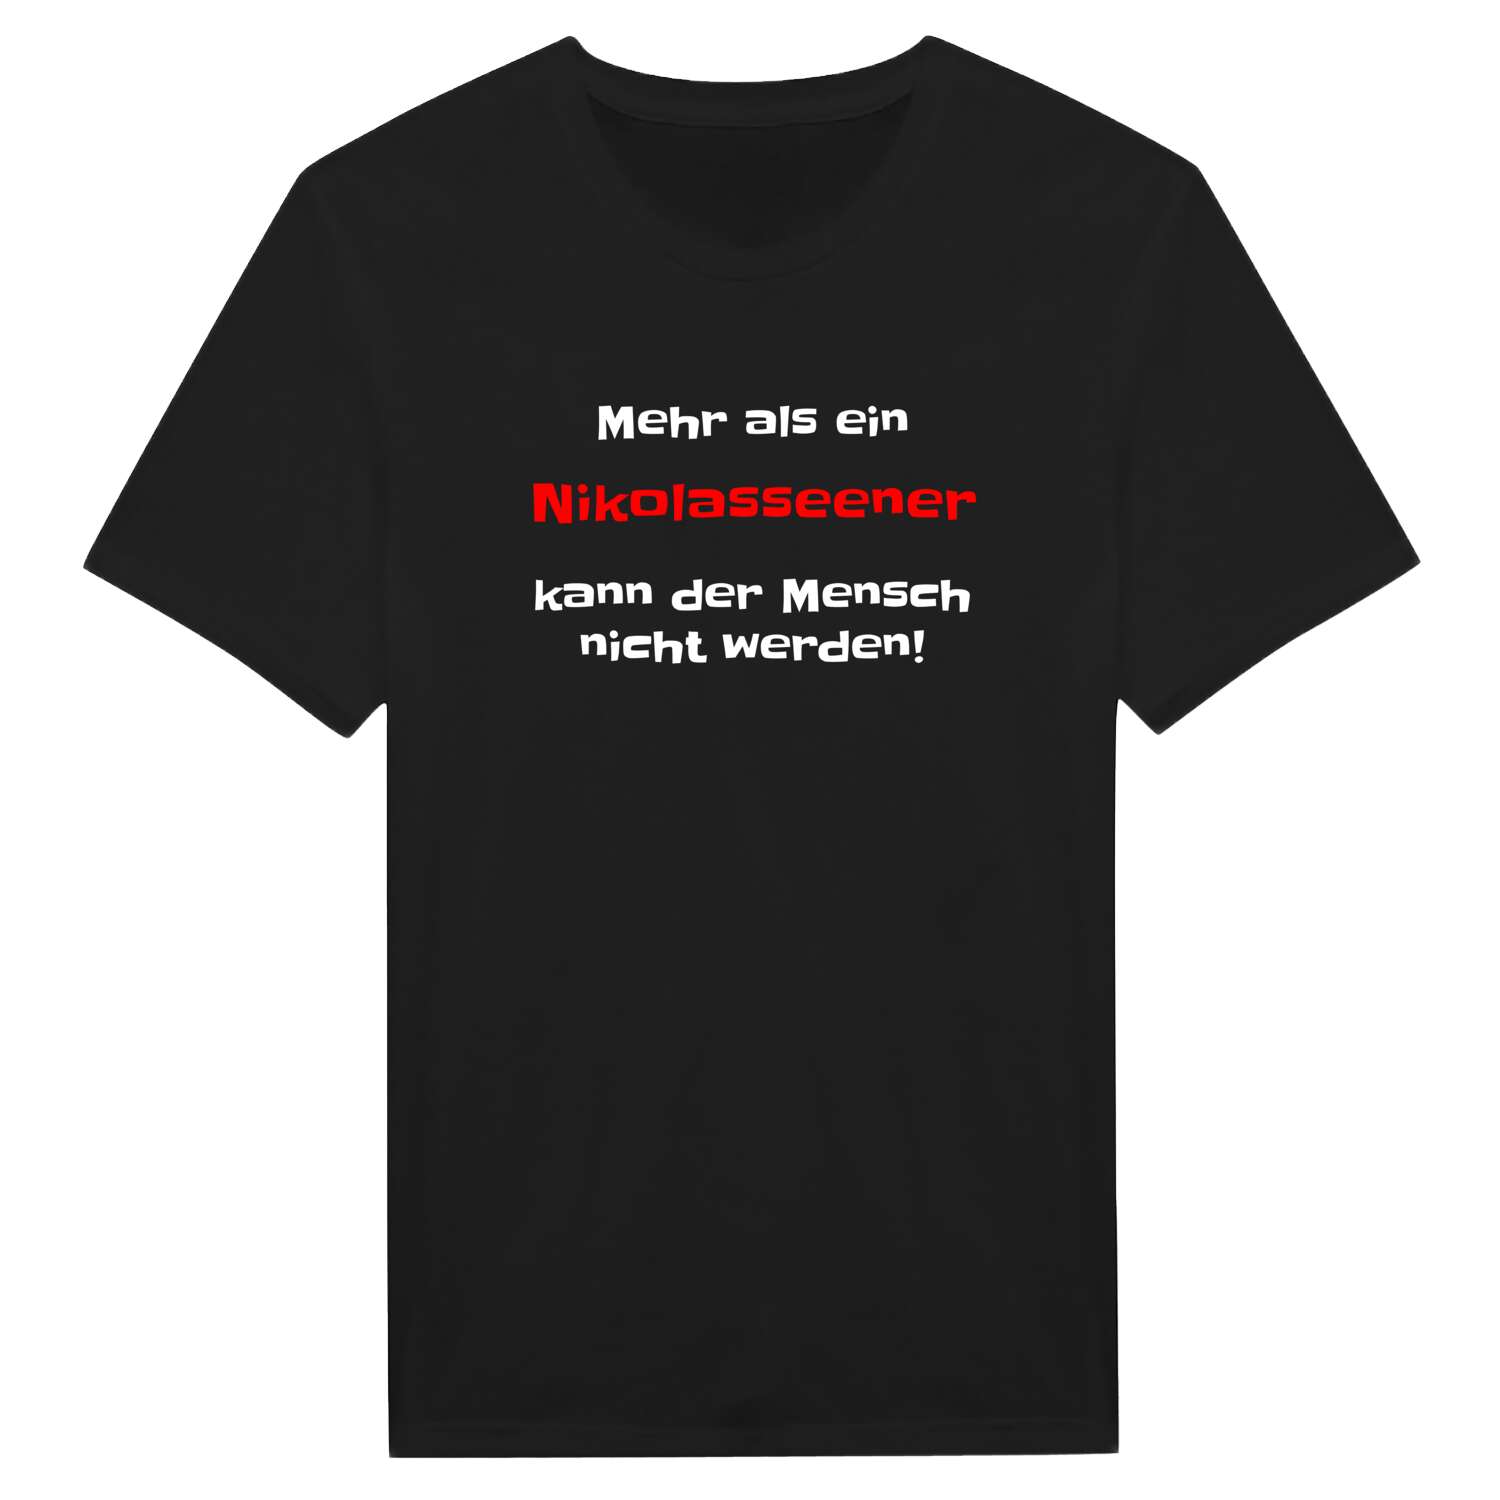 Nikolassee T-Shirt »Mehr als ein«